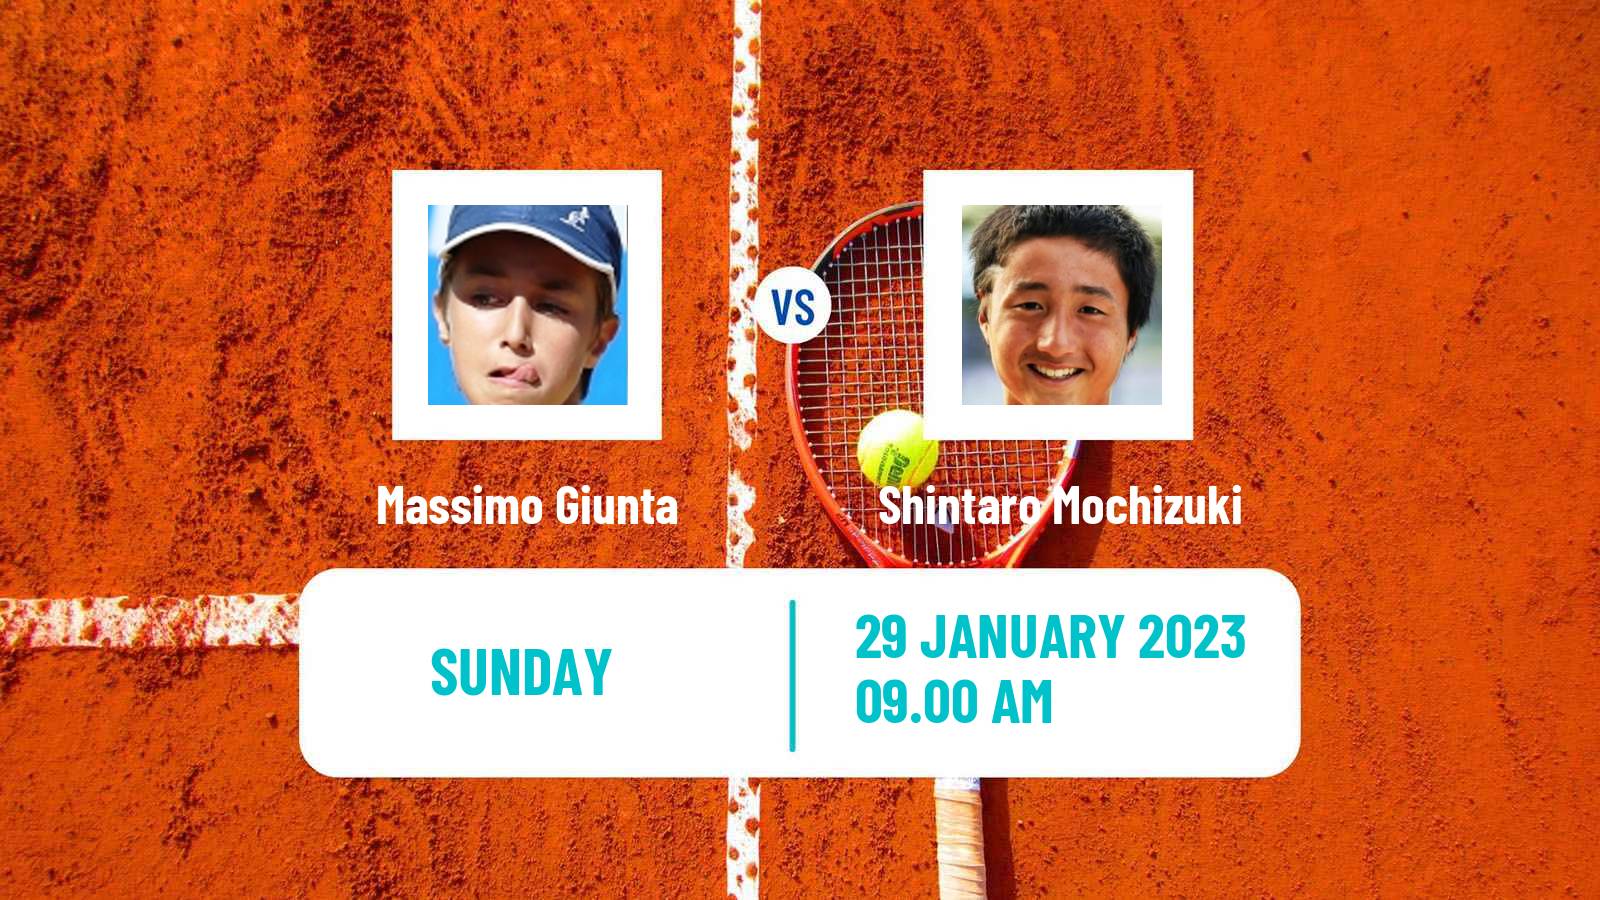 Tennis ATP Challenger Massimo Giunta - Shintaro Mochizuki